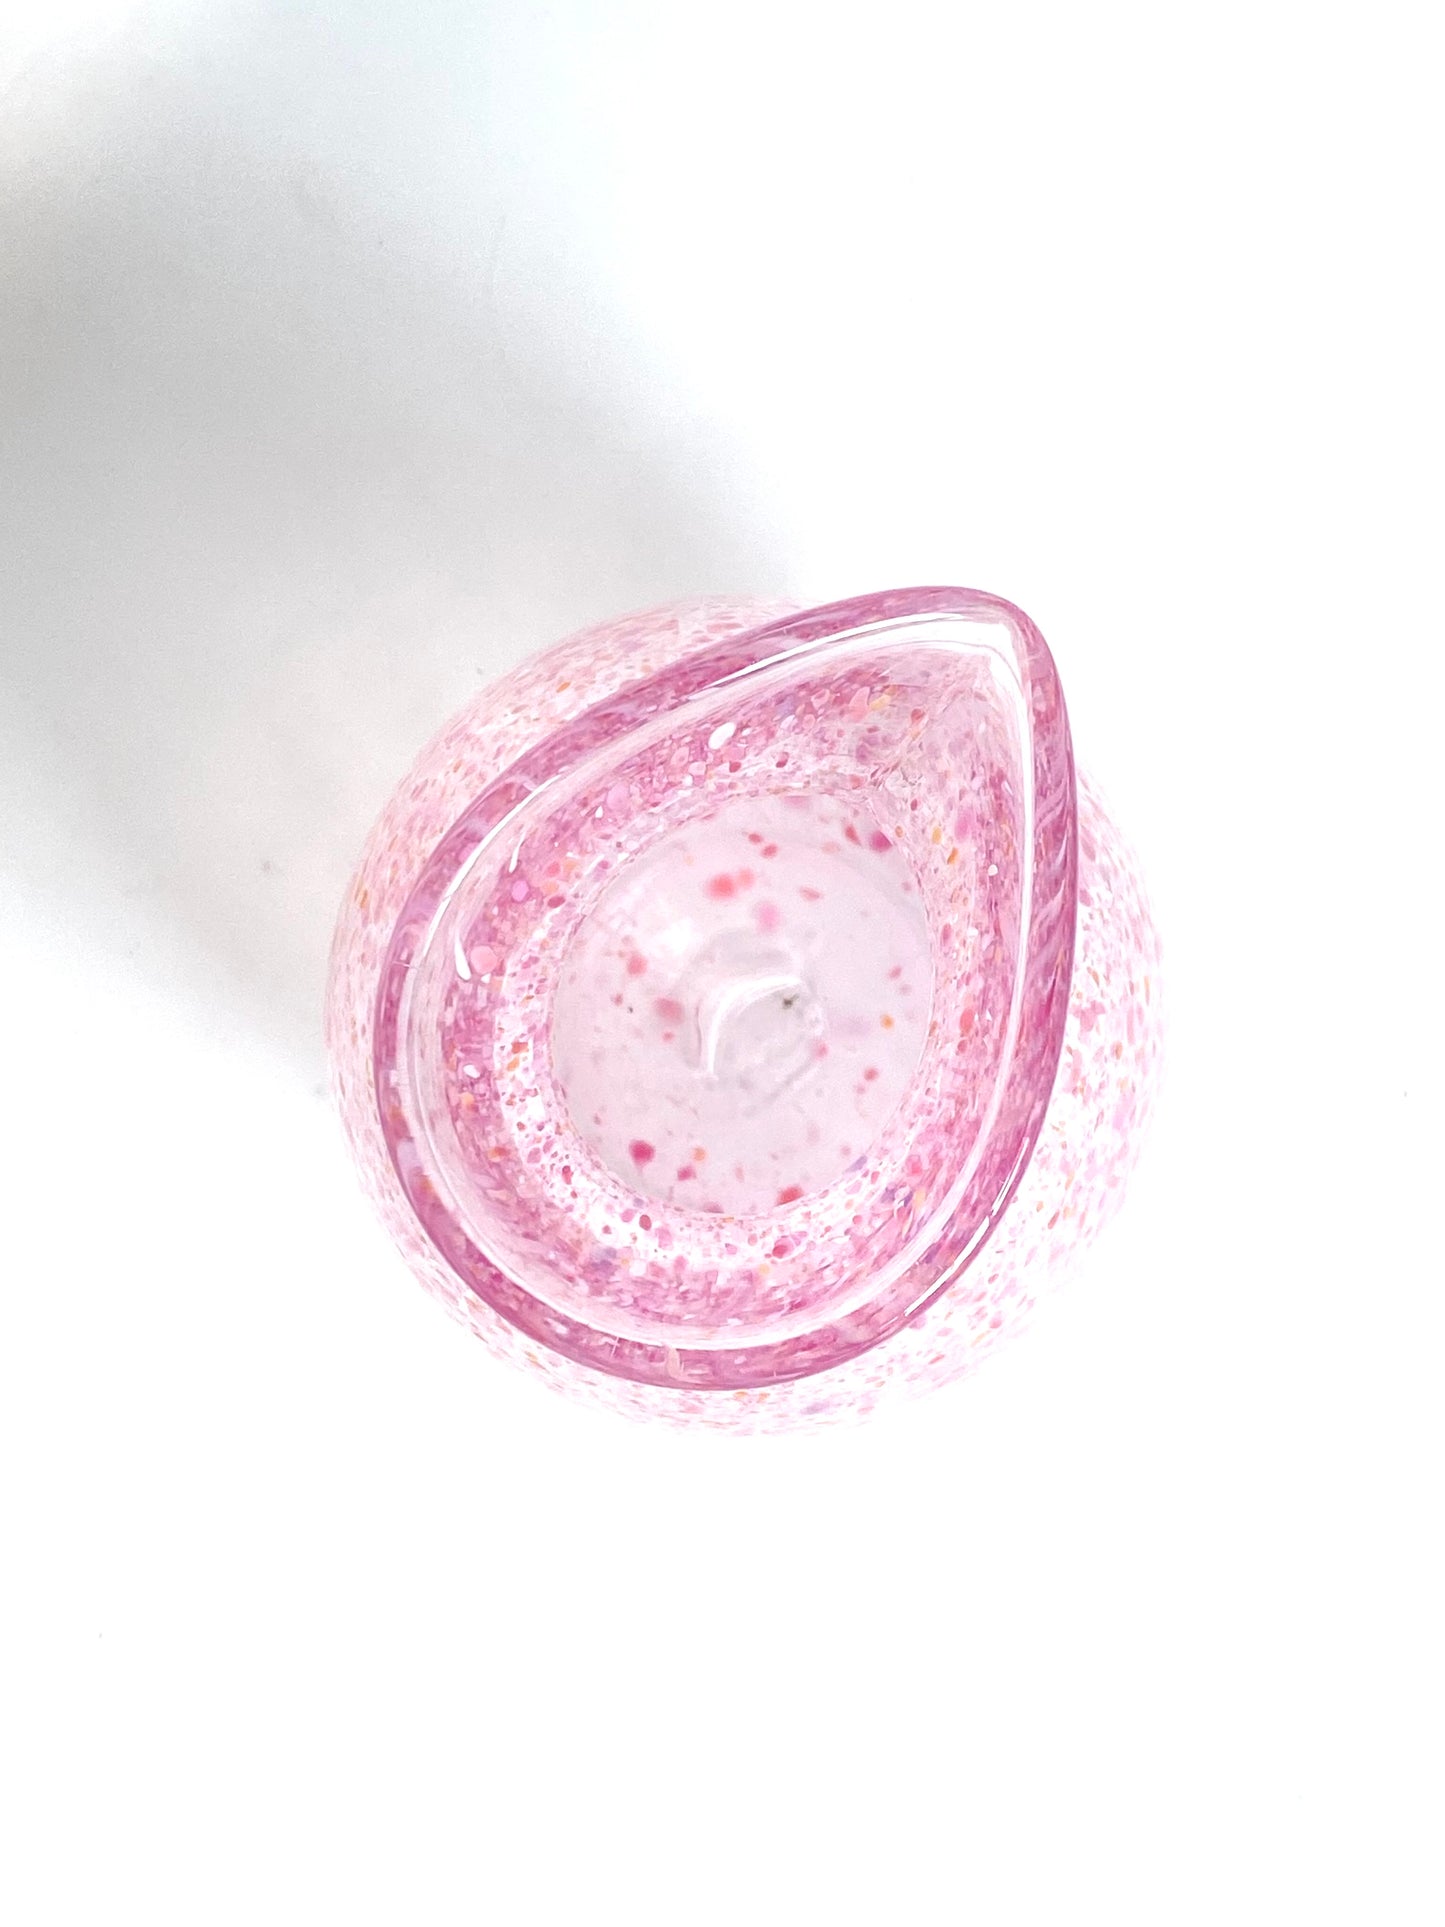 Handblown Glass Carafe - Pink